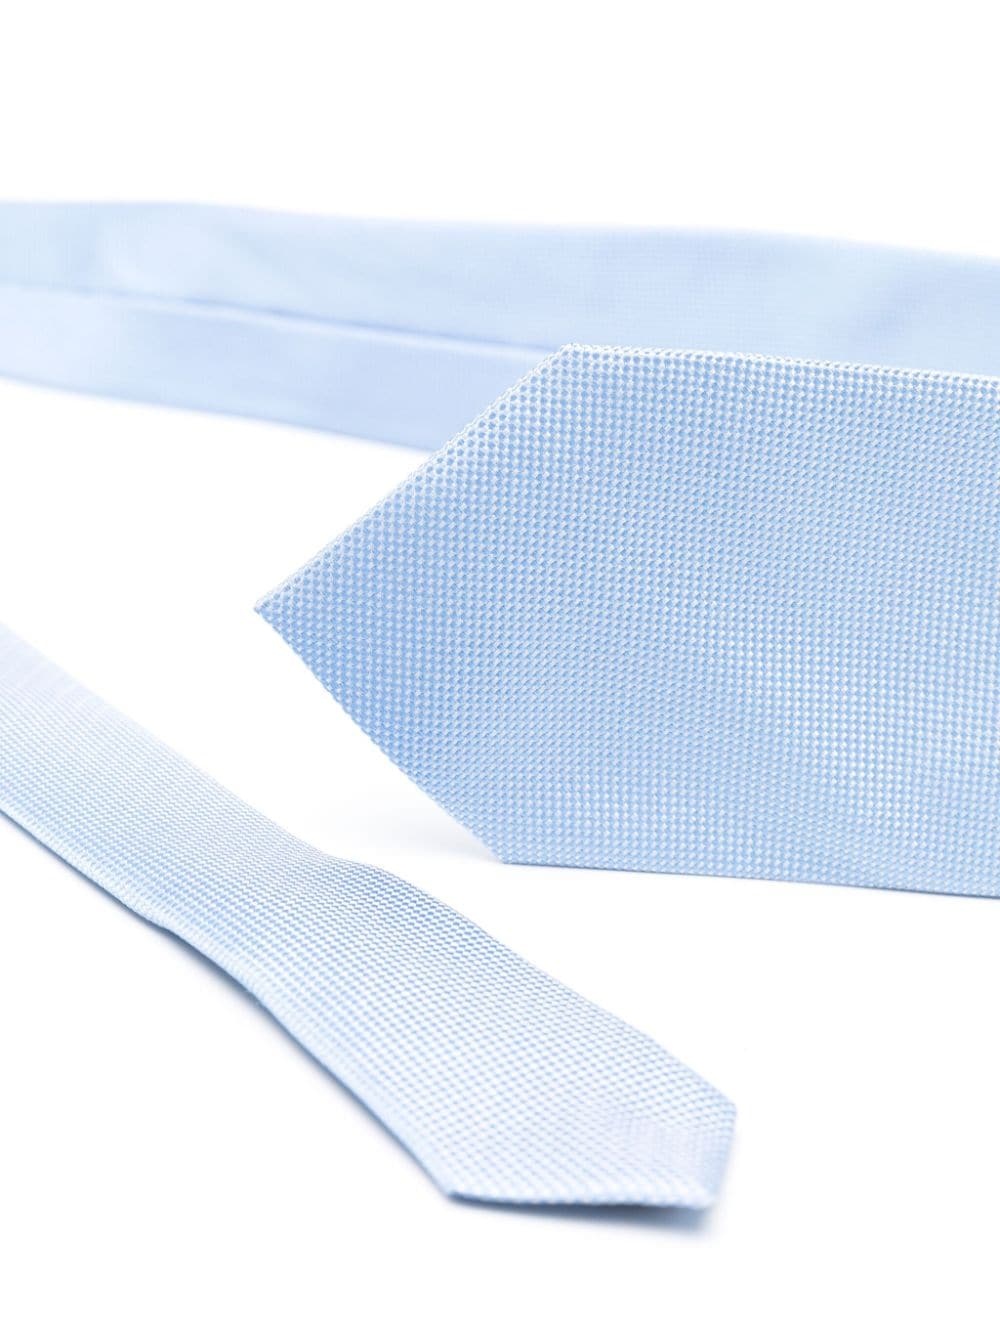 interwoven-design silk tie - 2